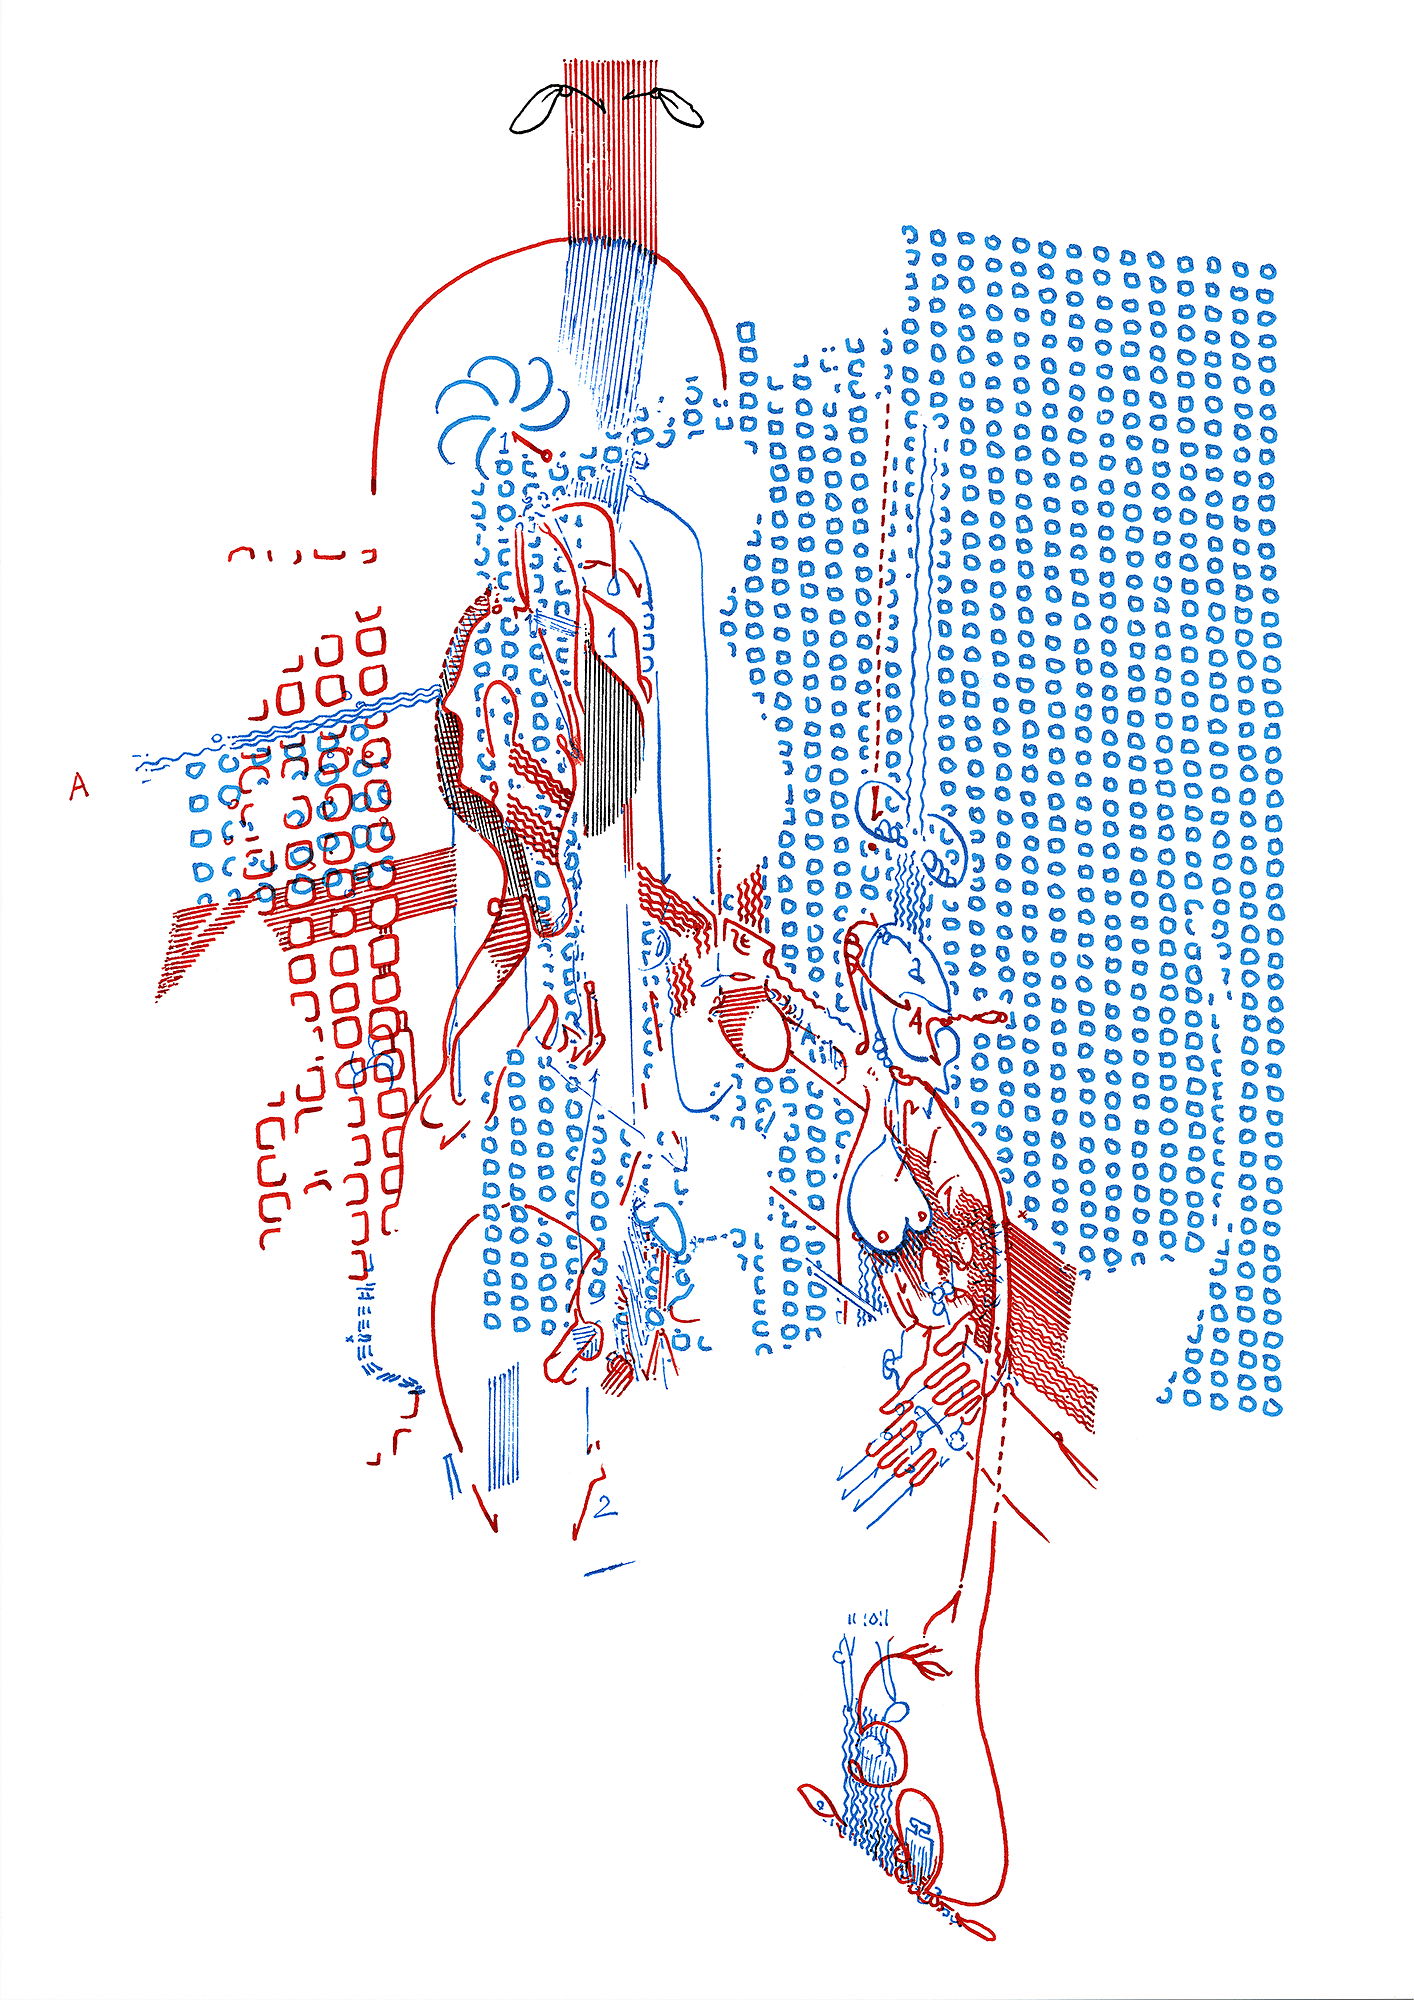 Hannes Kater: Tageszeichnung (Zeichnung/drawing) vom 22.11.2015 (1414 x 2000 Pixel)